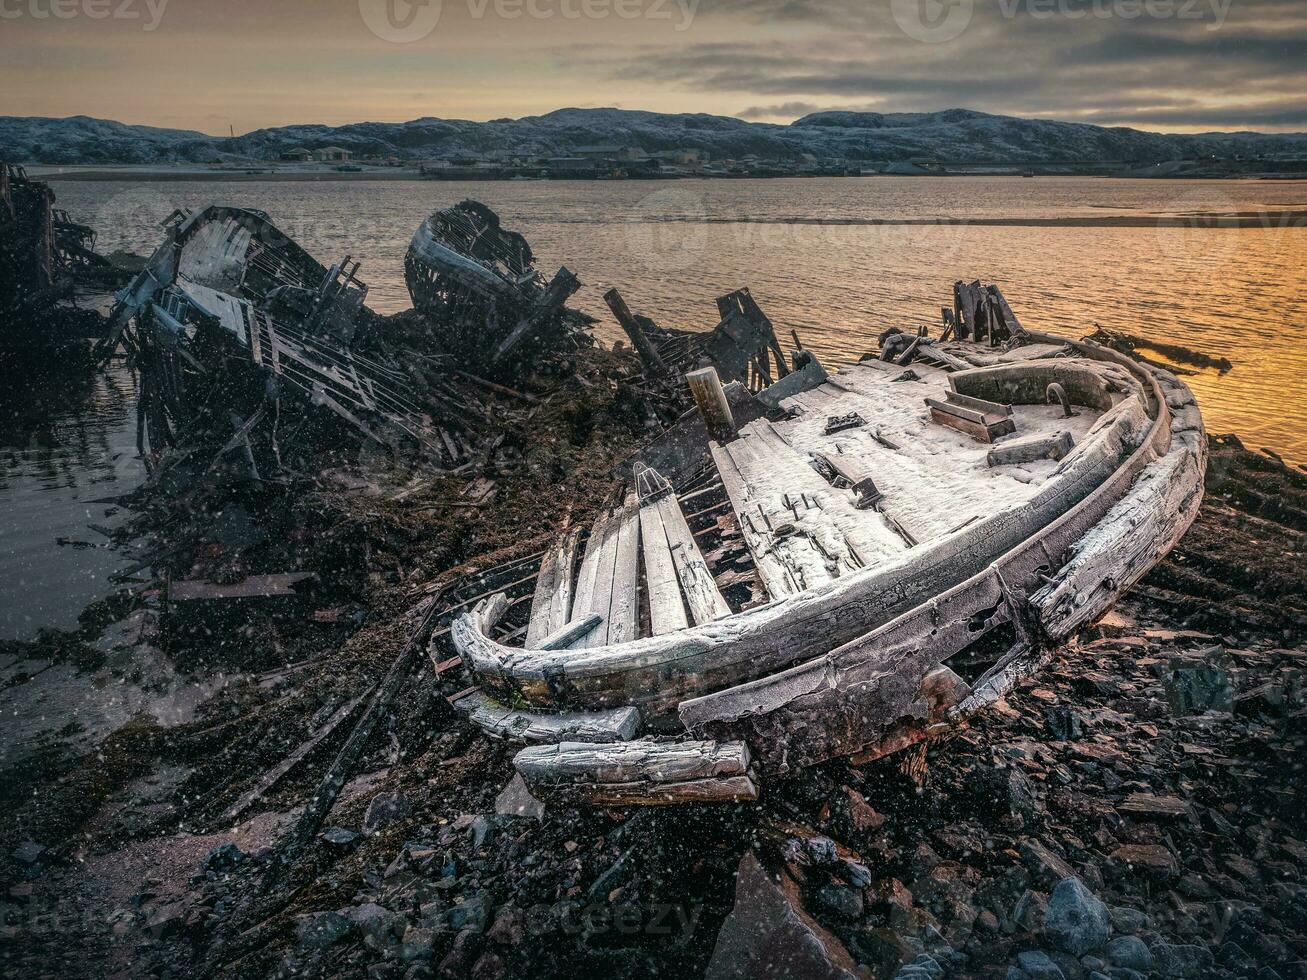 antiguo oxidado pescar barco abandonado por un tormenta en el invierno costa. cementerio de buques. foto